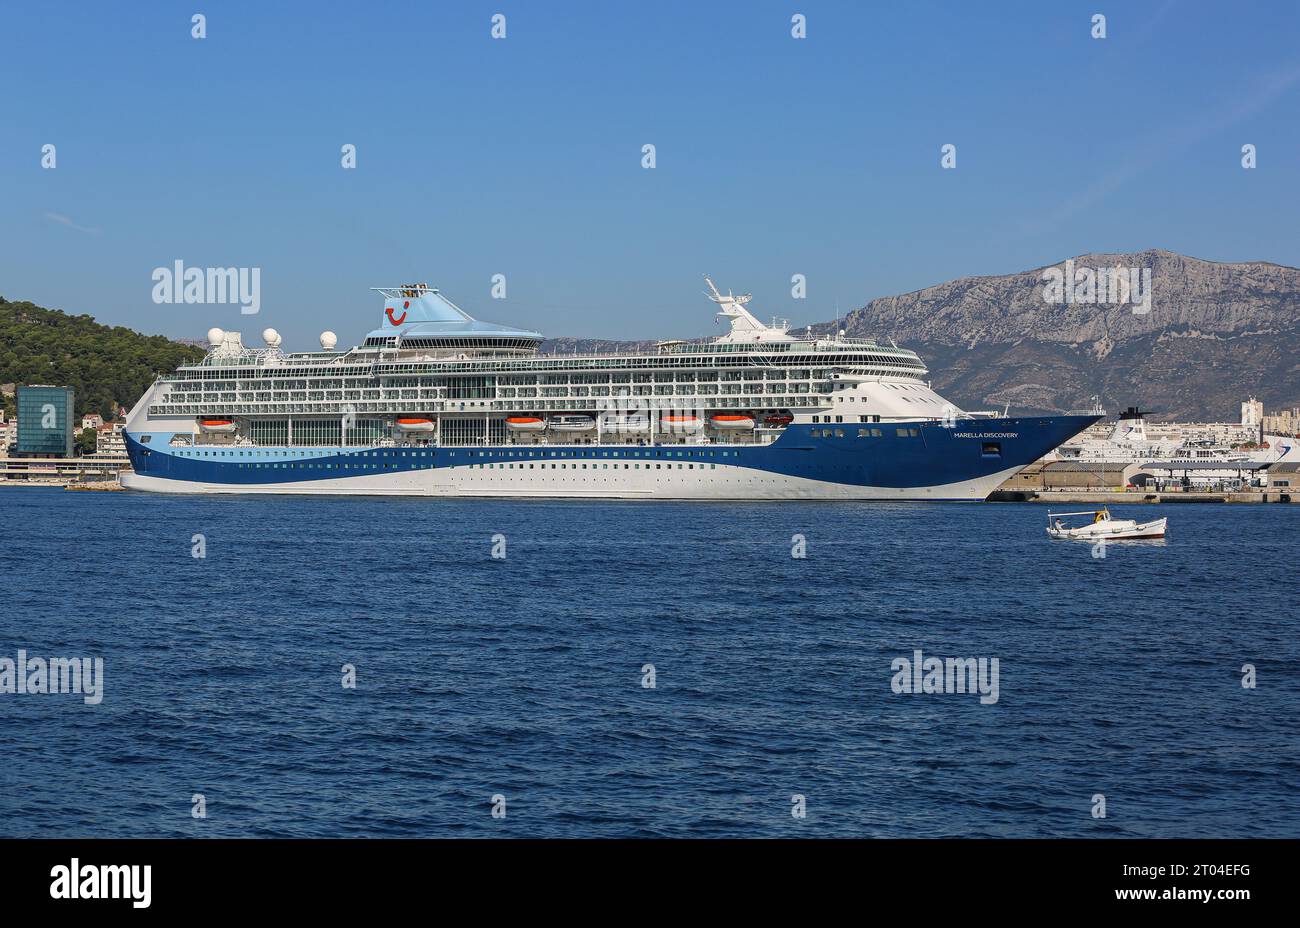 La nave da crociera Marella Discovery (ex splendore dei mari), Marella Cruises, Foto Stock